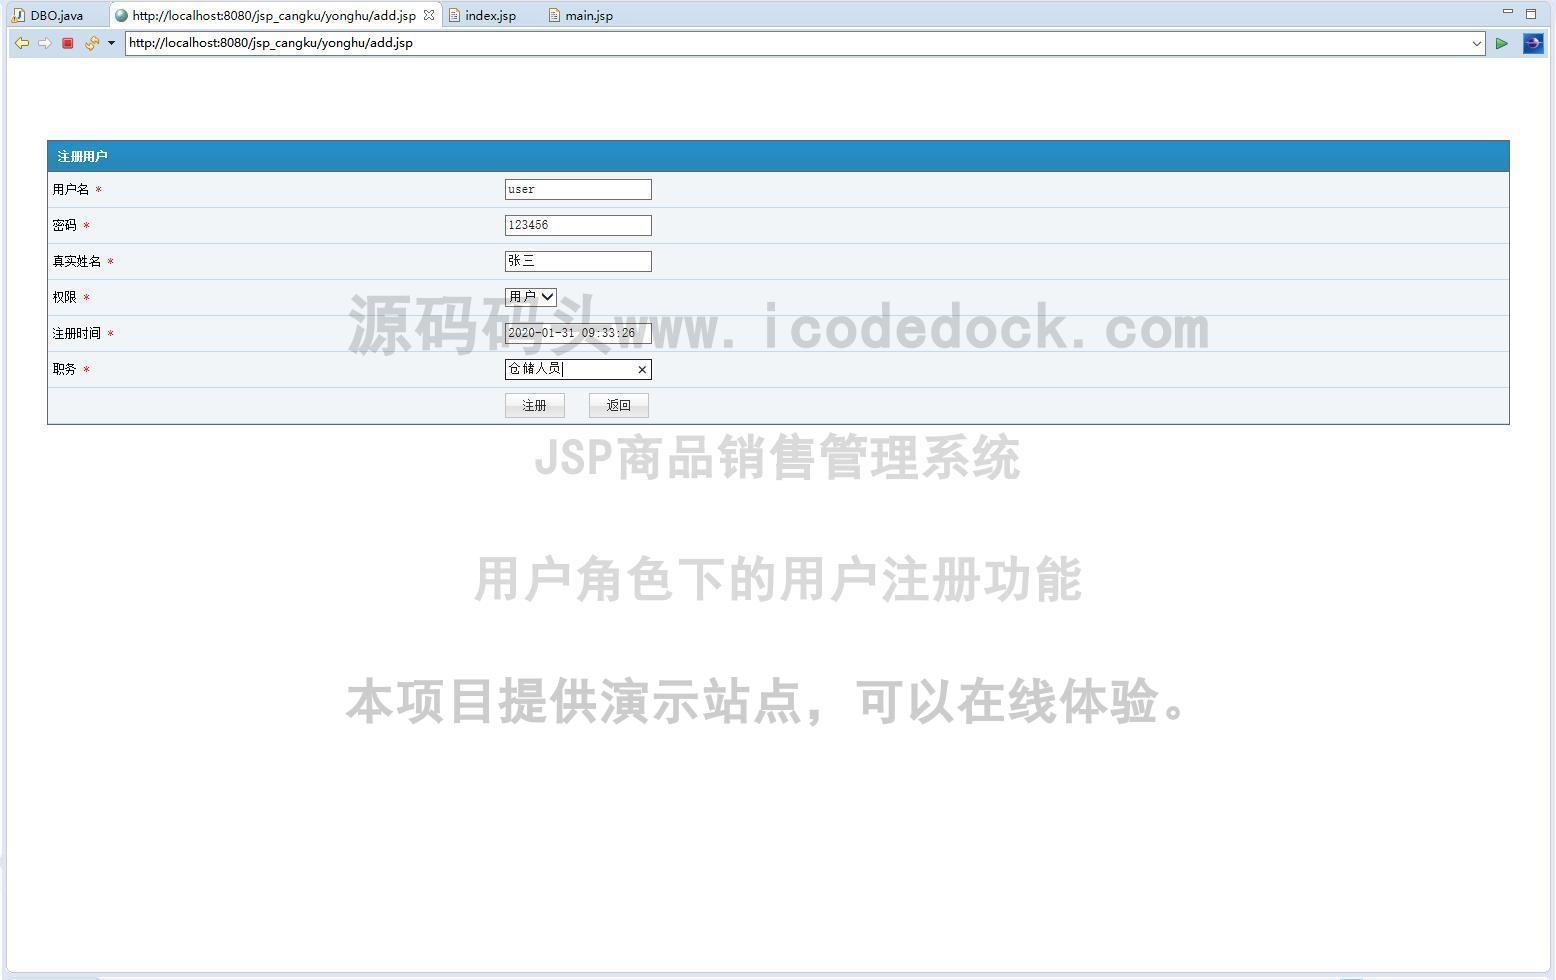 源码码头-JSP商品销售管理系统-用户角色-用户注册